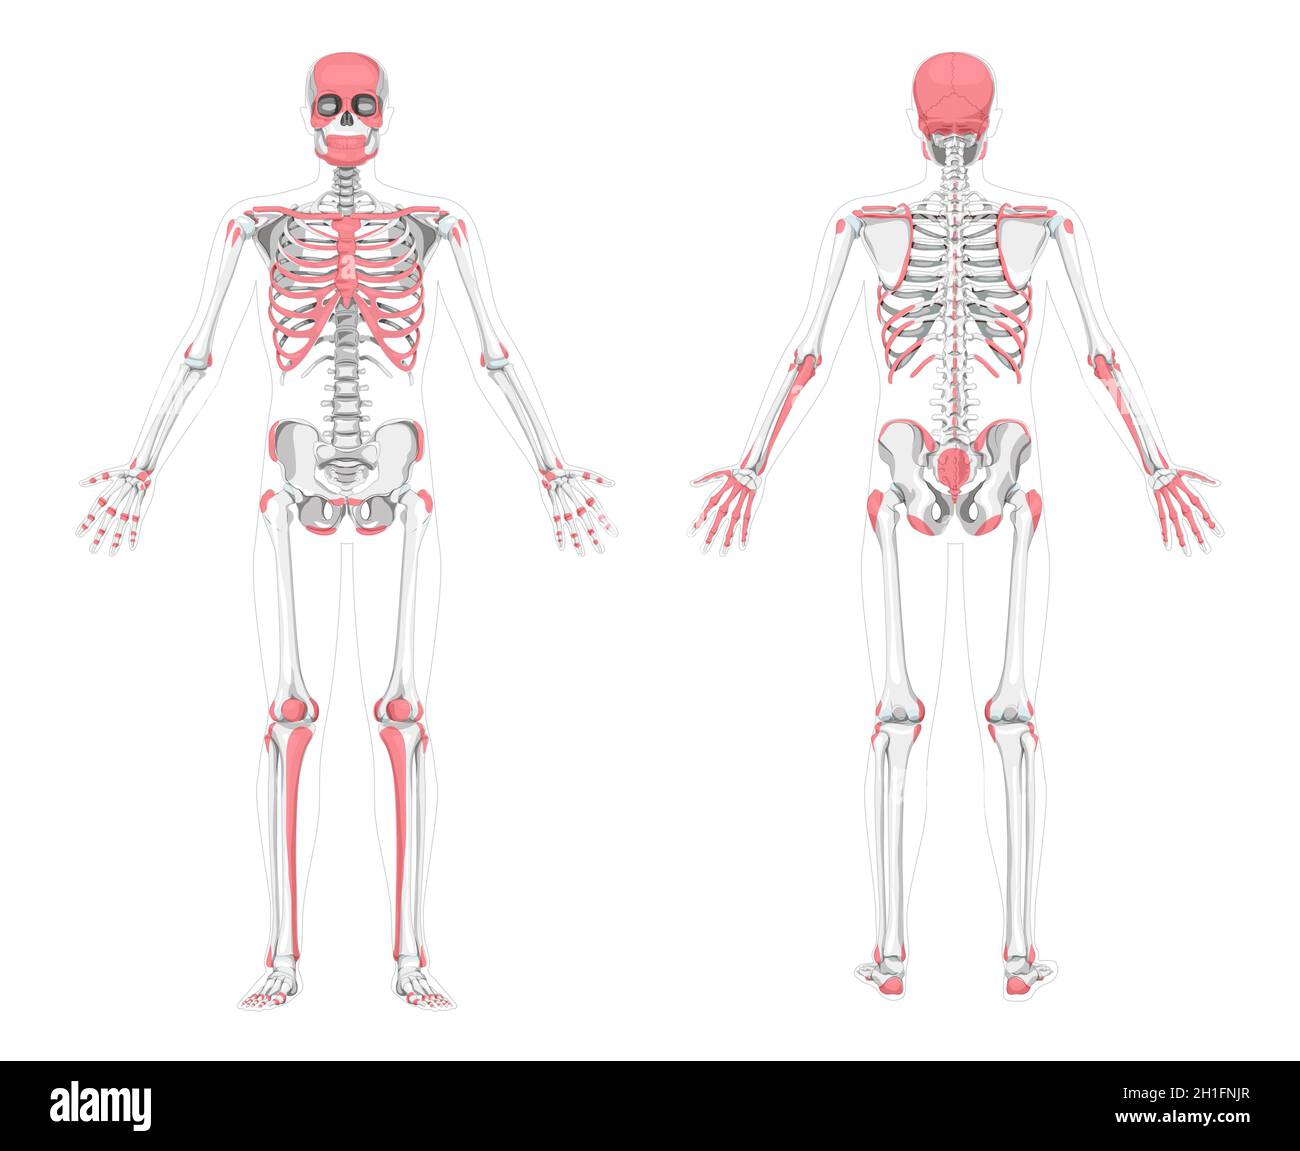 Les os palpables humains zones squelette.Vue arrière antérieure postérieure avant.Illustration vectorielle échelle de gris plate, couleur rouge carte d'anatomie isolée diagnostiquant une maladie, une maladie, un examen physique Illustration de Vecteur